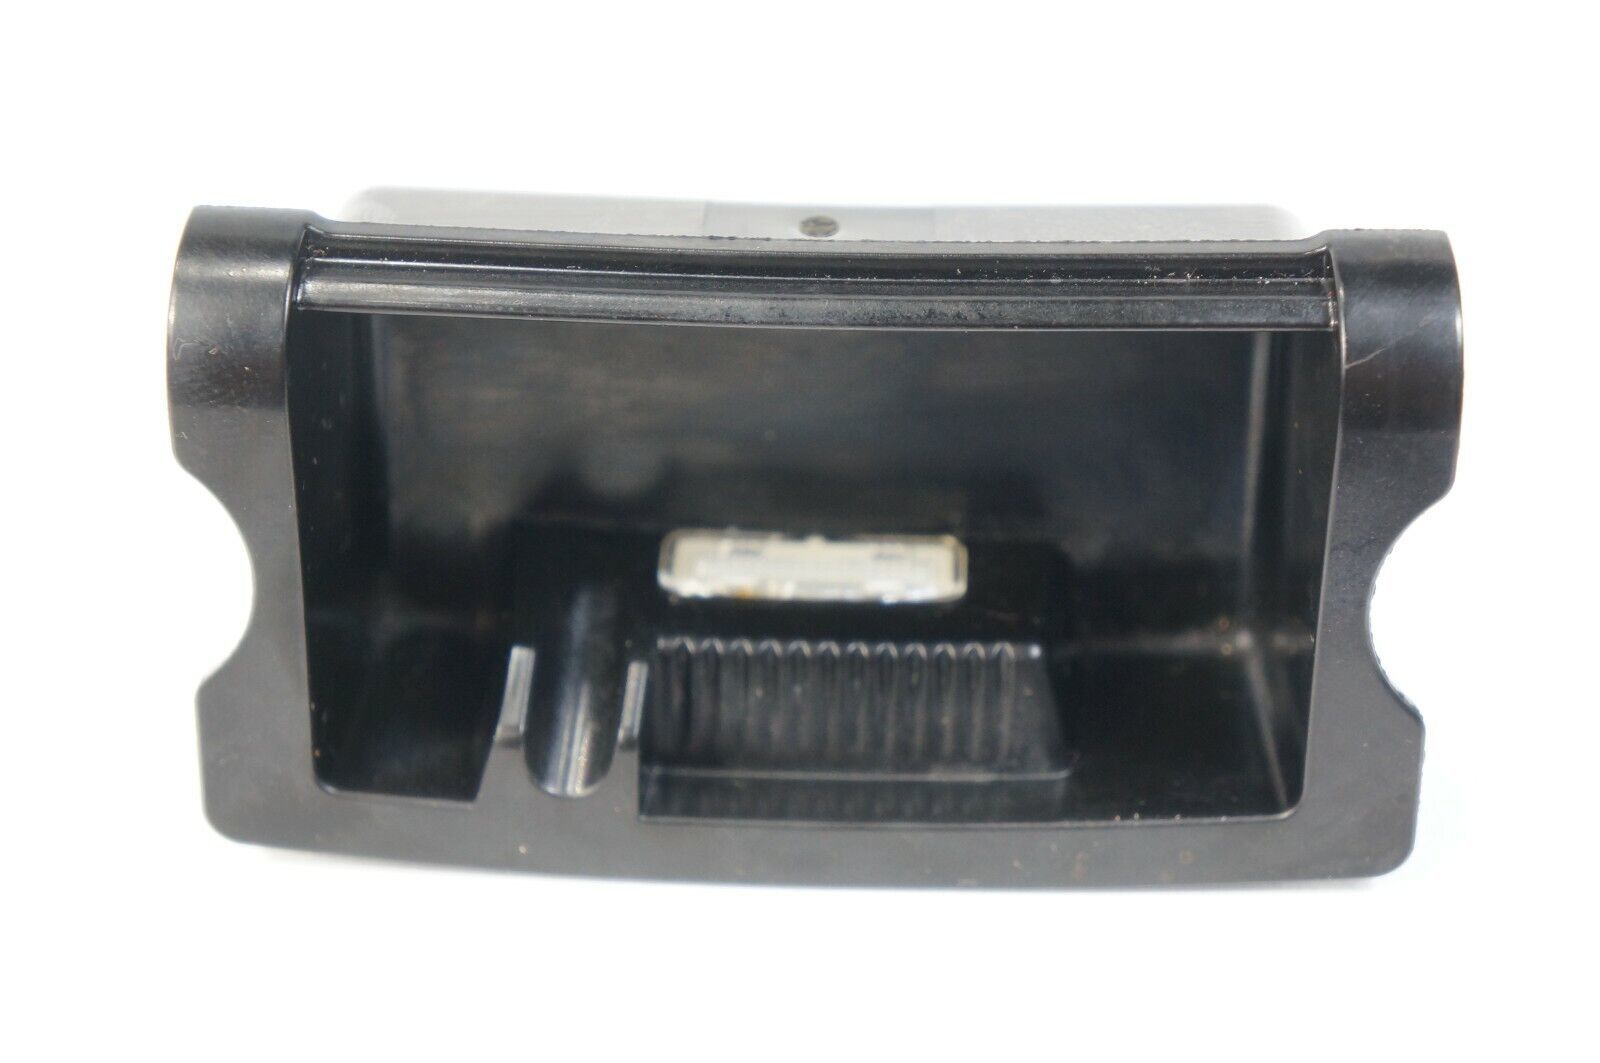 2011-2016 bmw f10 528i 550i 535i front center console ash tray ashtray insert - $21.87